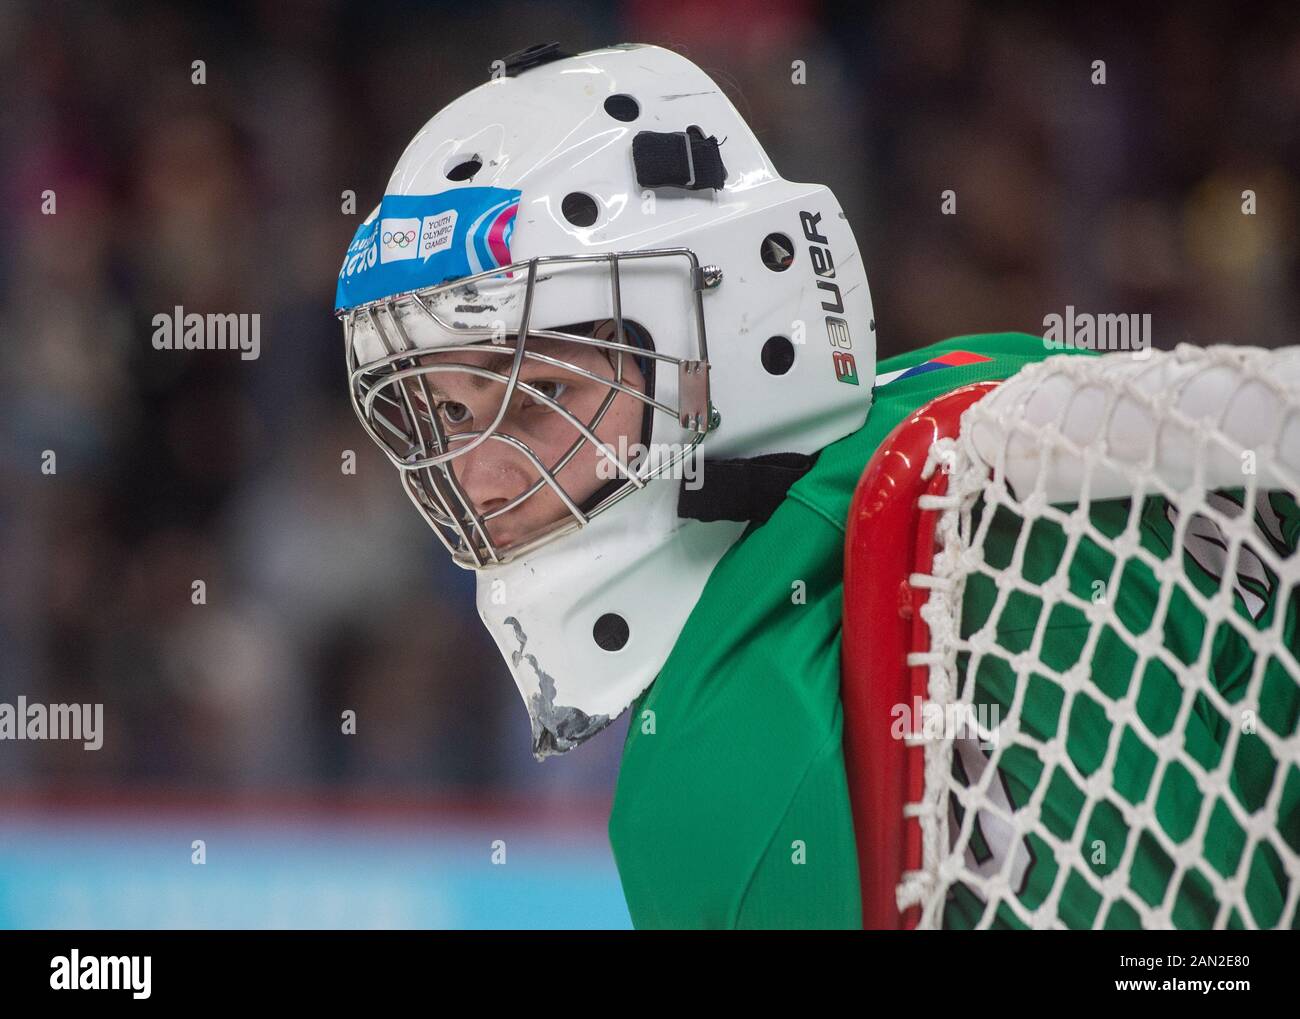 Portiere di hockey ceco Stepan Malecek in azione durante i NOC 3-on-3 misti degli uomini di hockey su ghiaccio durante i Giochi Olimpici invernali Giovanile di Losanna 2020 a Losanna, Svizzera, 15 gennaio 2020. (Foto Ctk/Ballerino Vaclav) Foto Stock